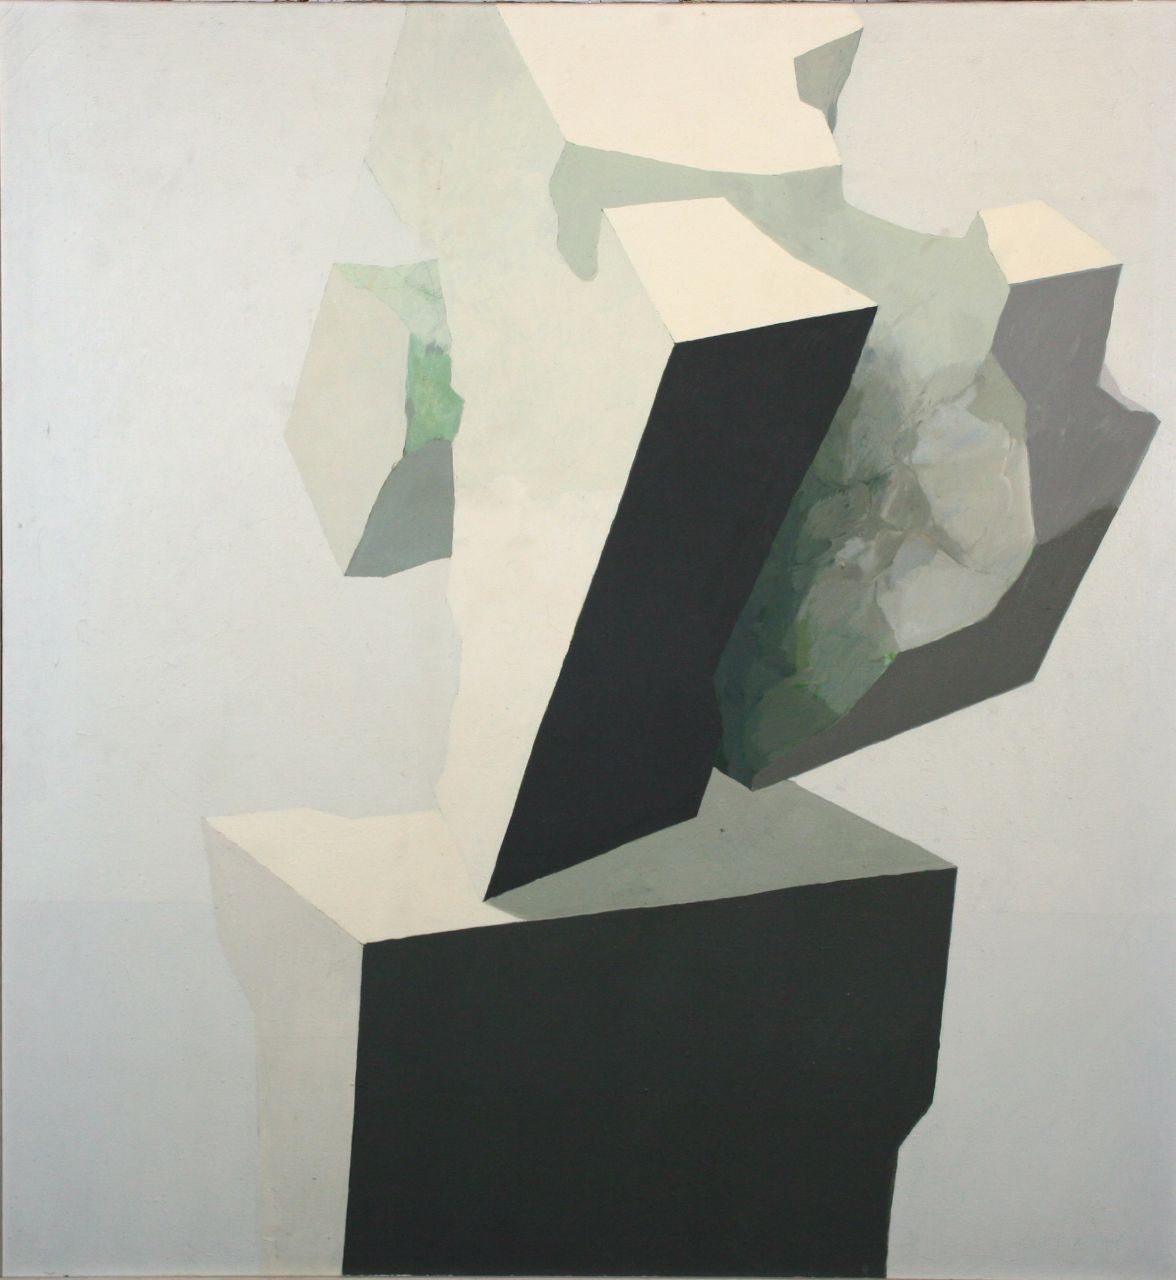 Roland Dörfler, Würfel durchbrochen III, 1969, Öl auf Leinwand, 145,5 cm x 135 cm, dör014kü